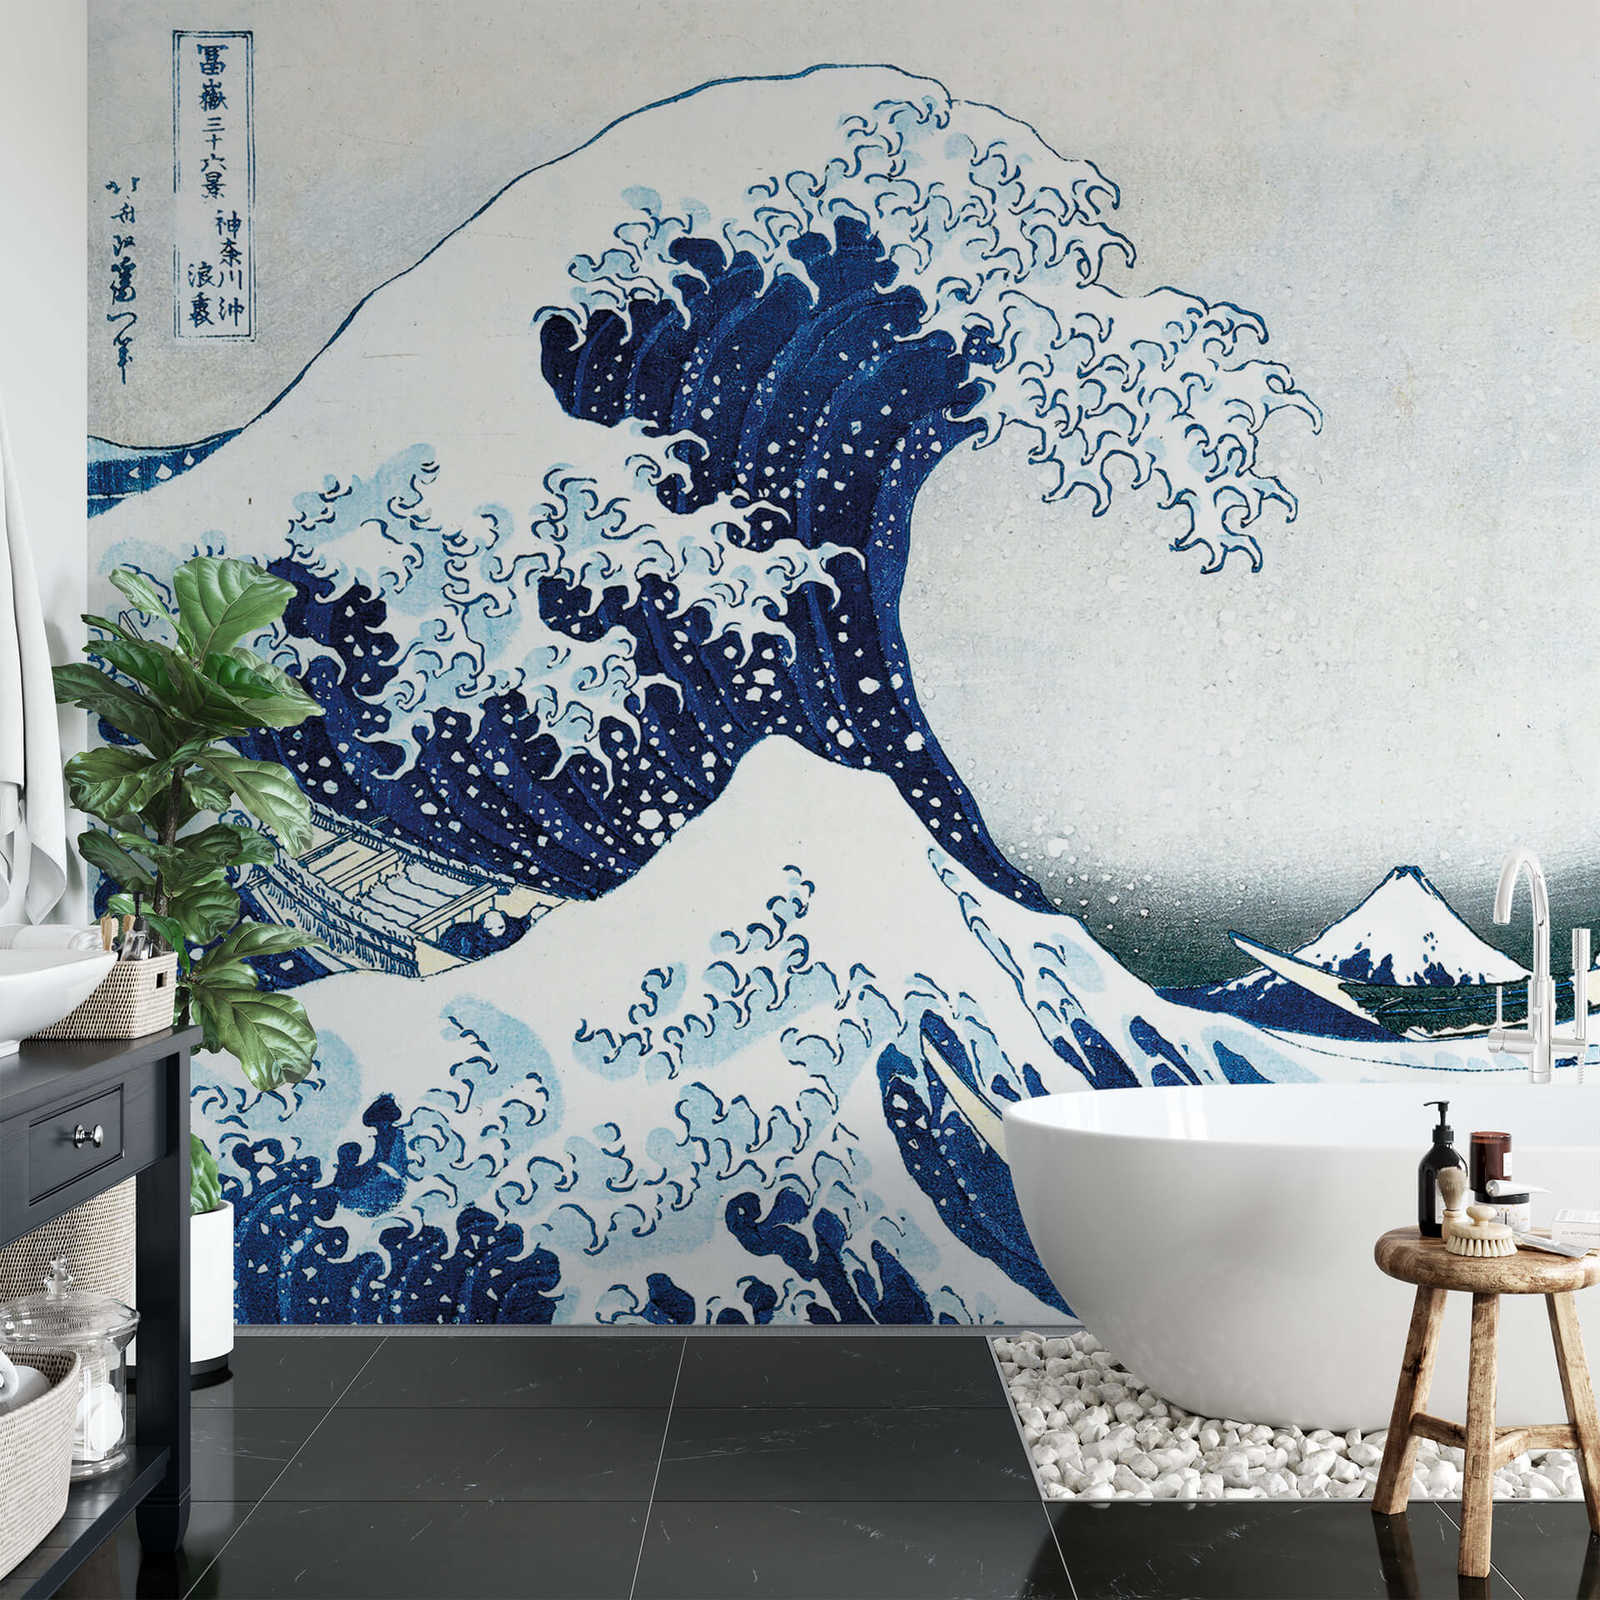             Mural de pared con olas dibujadas - Azul
        